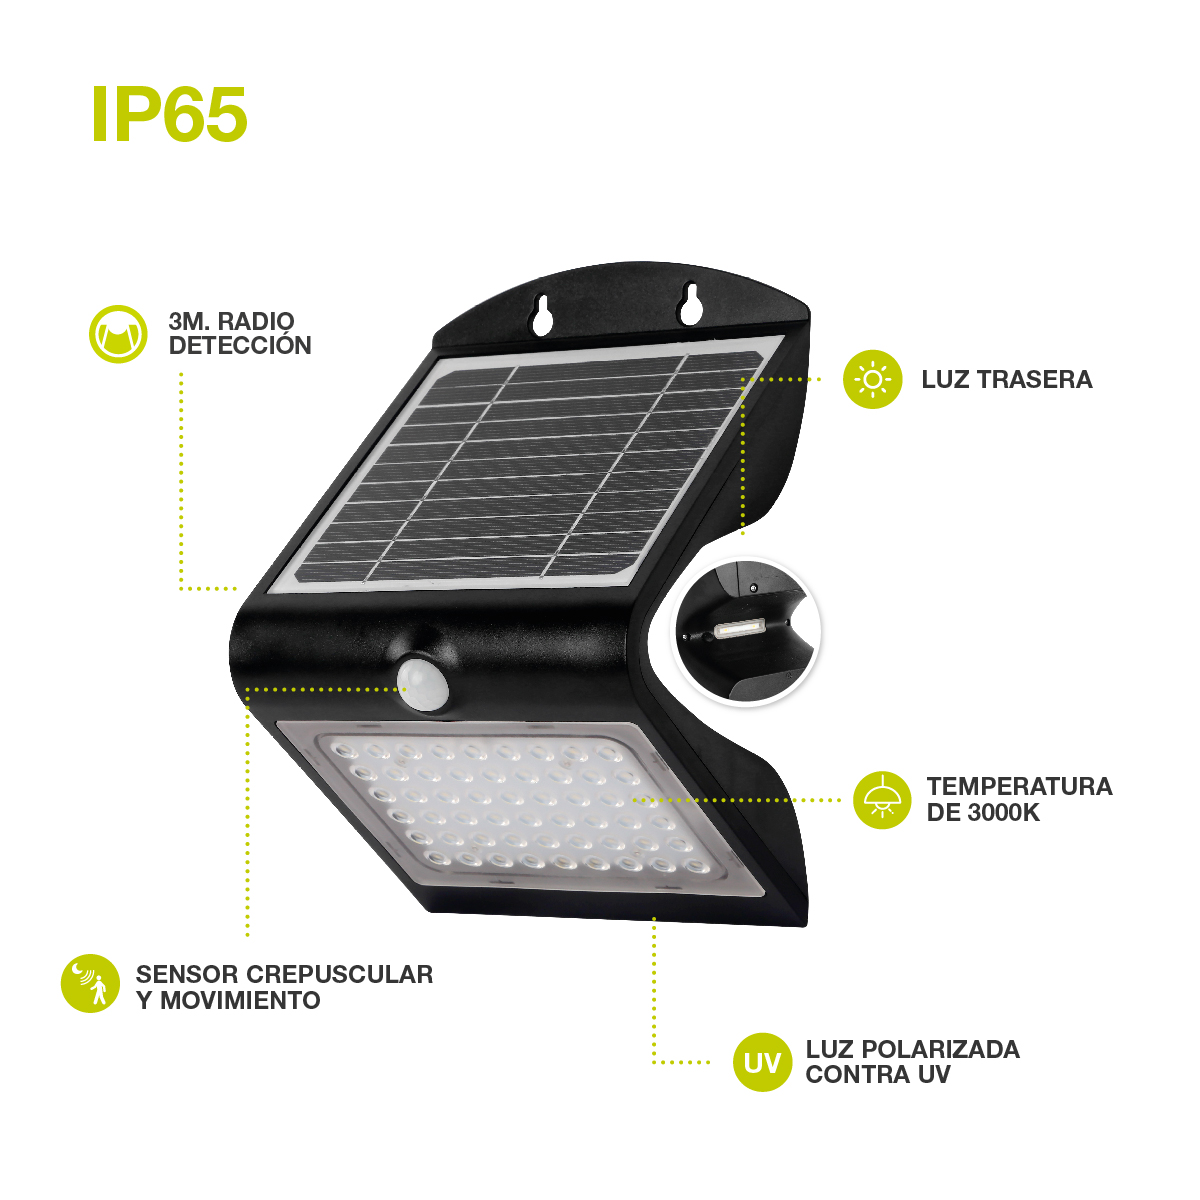 Aplique solar LED Lukulu con sensor de movimiento y crepuscular 4W 6000K Negro